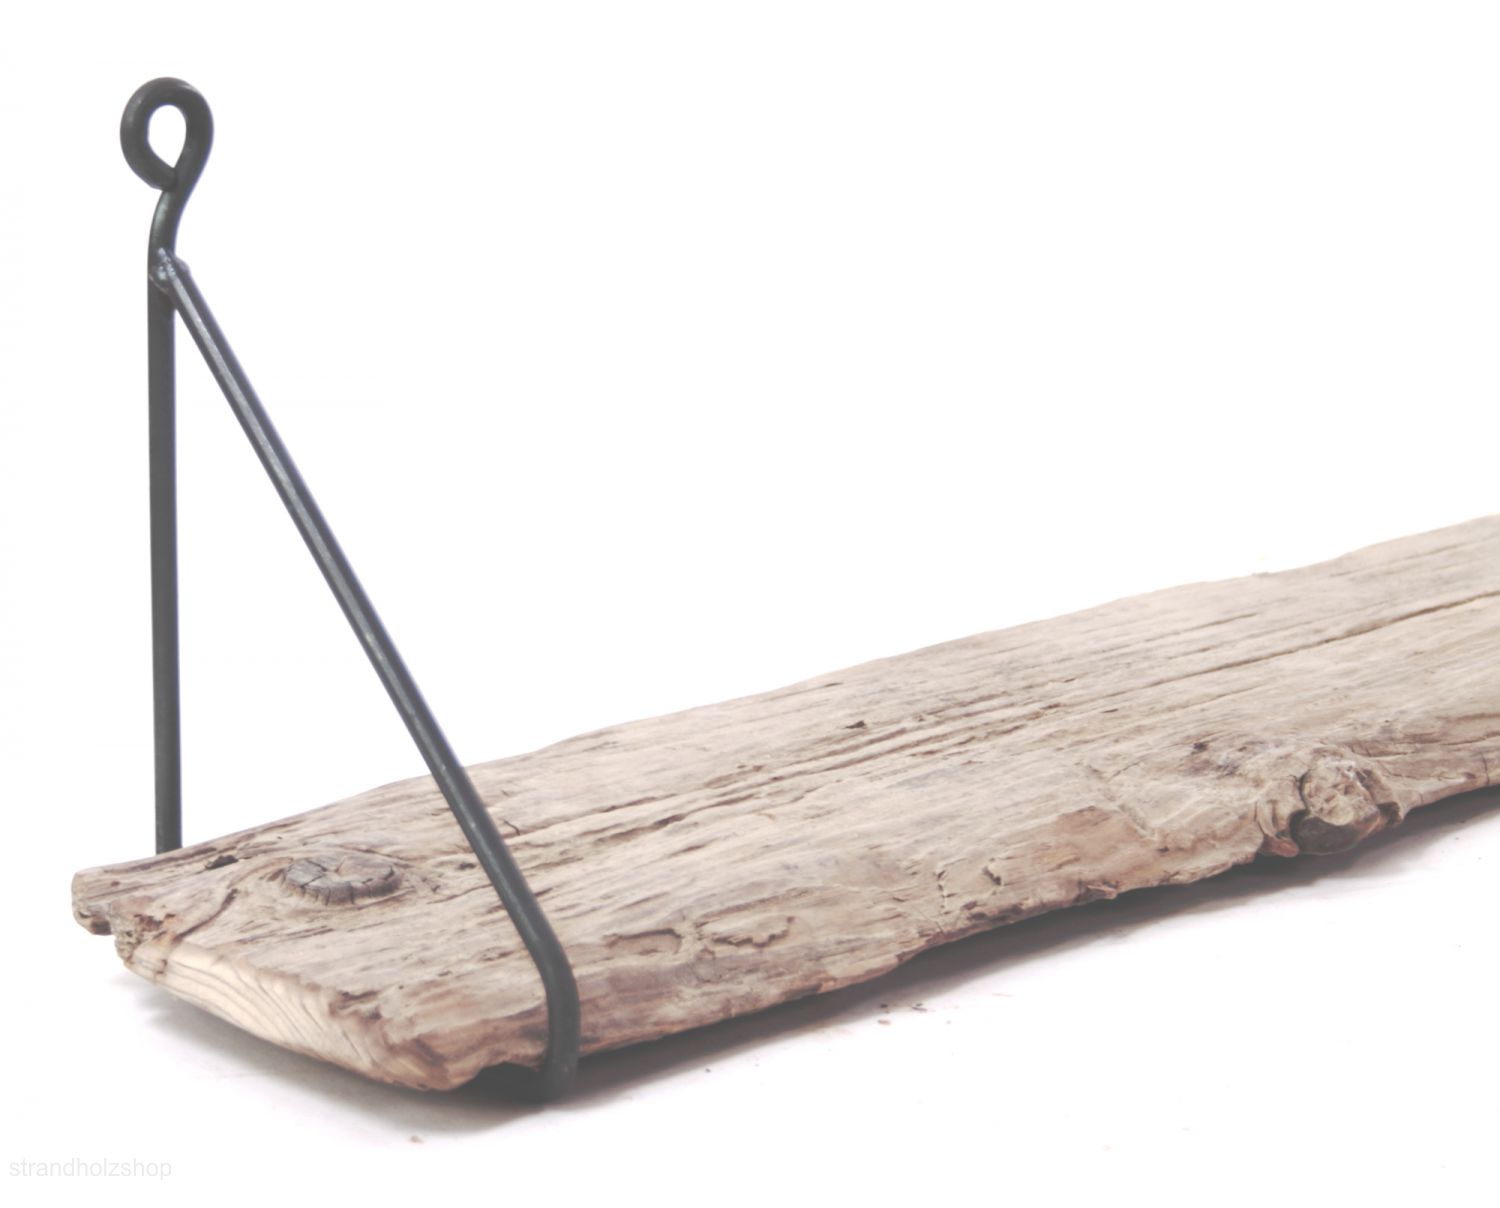 Fer angle 6x10cm pour bois flotté étagère wandboard strandholz ablagbrett altholz